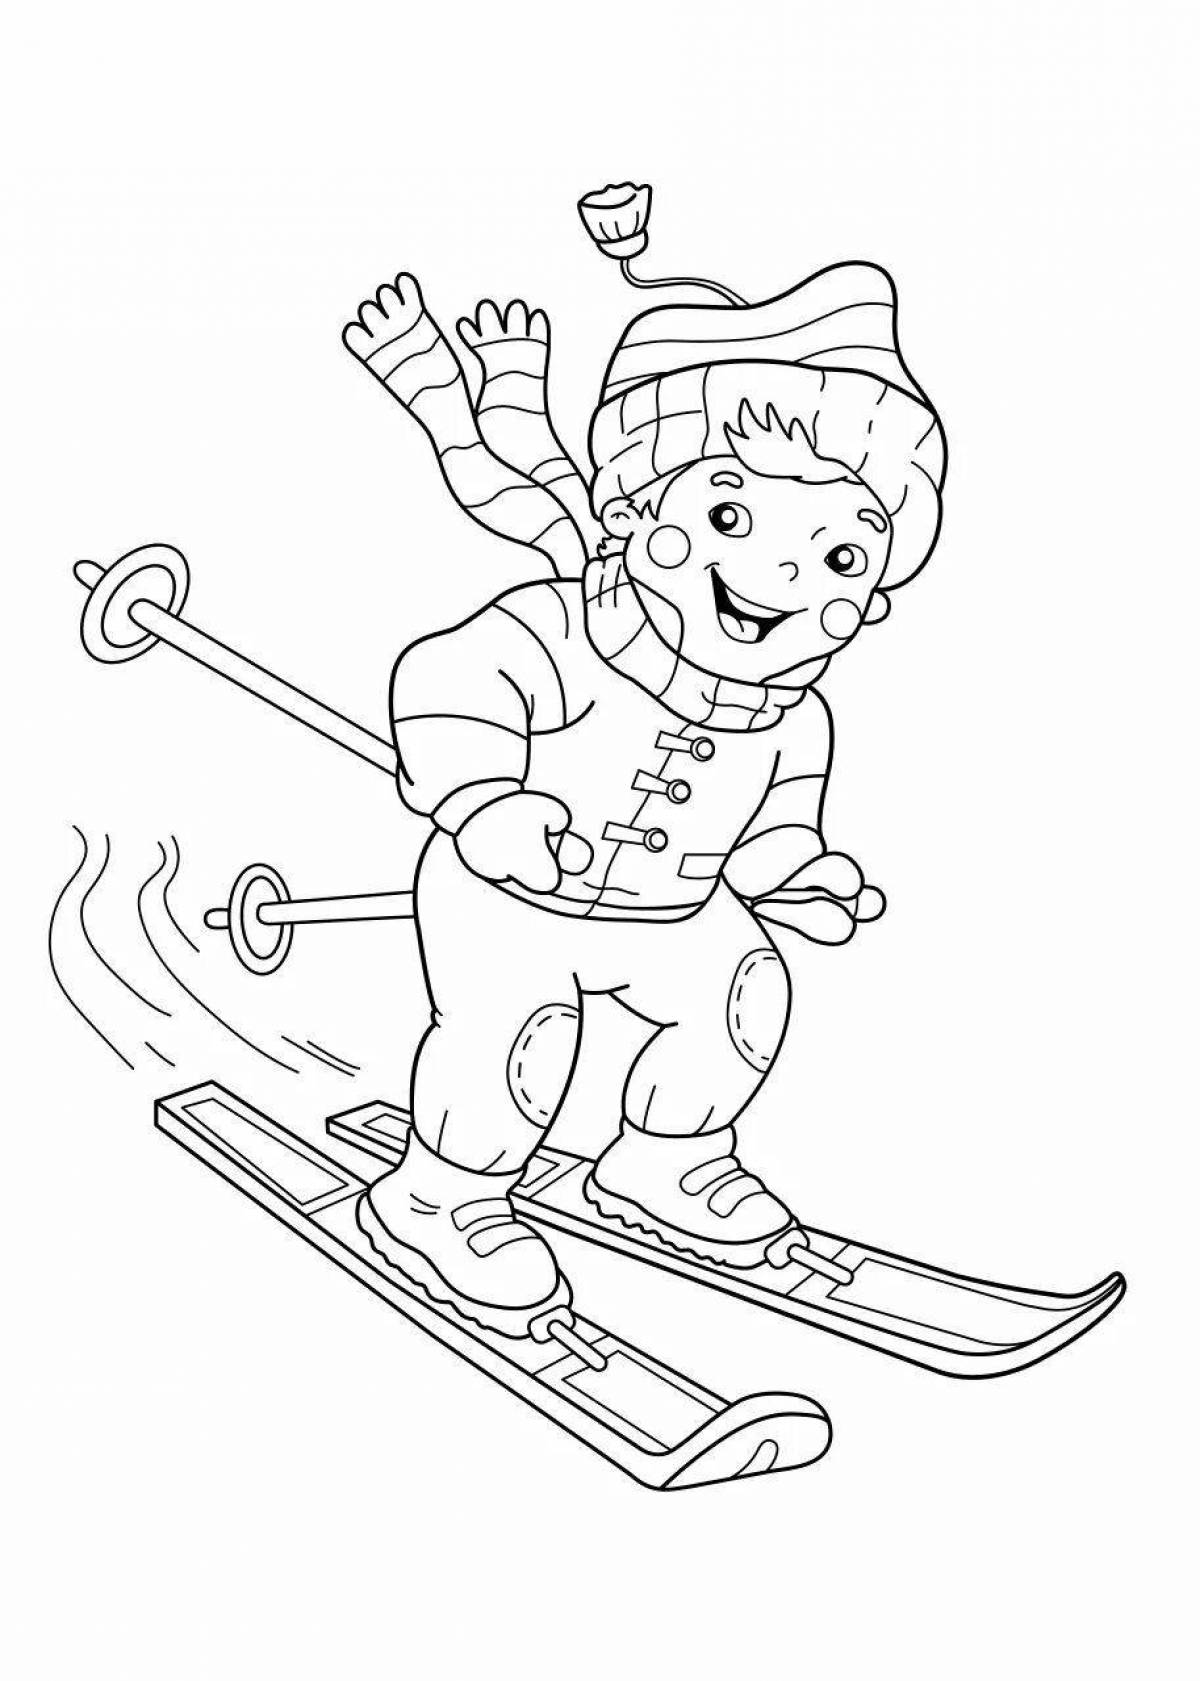 Dynamic skis for children